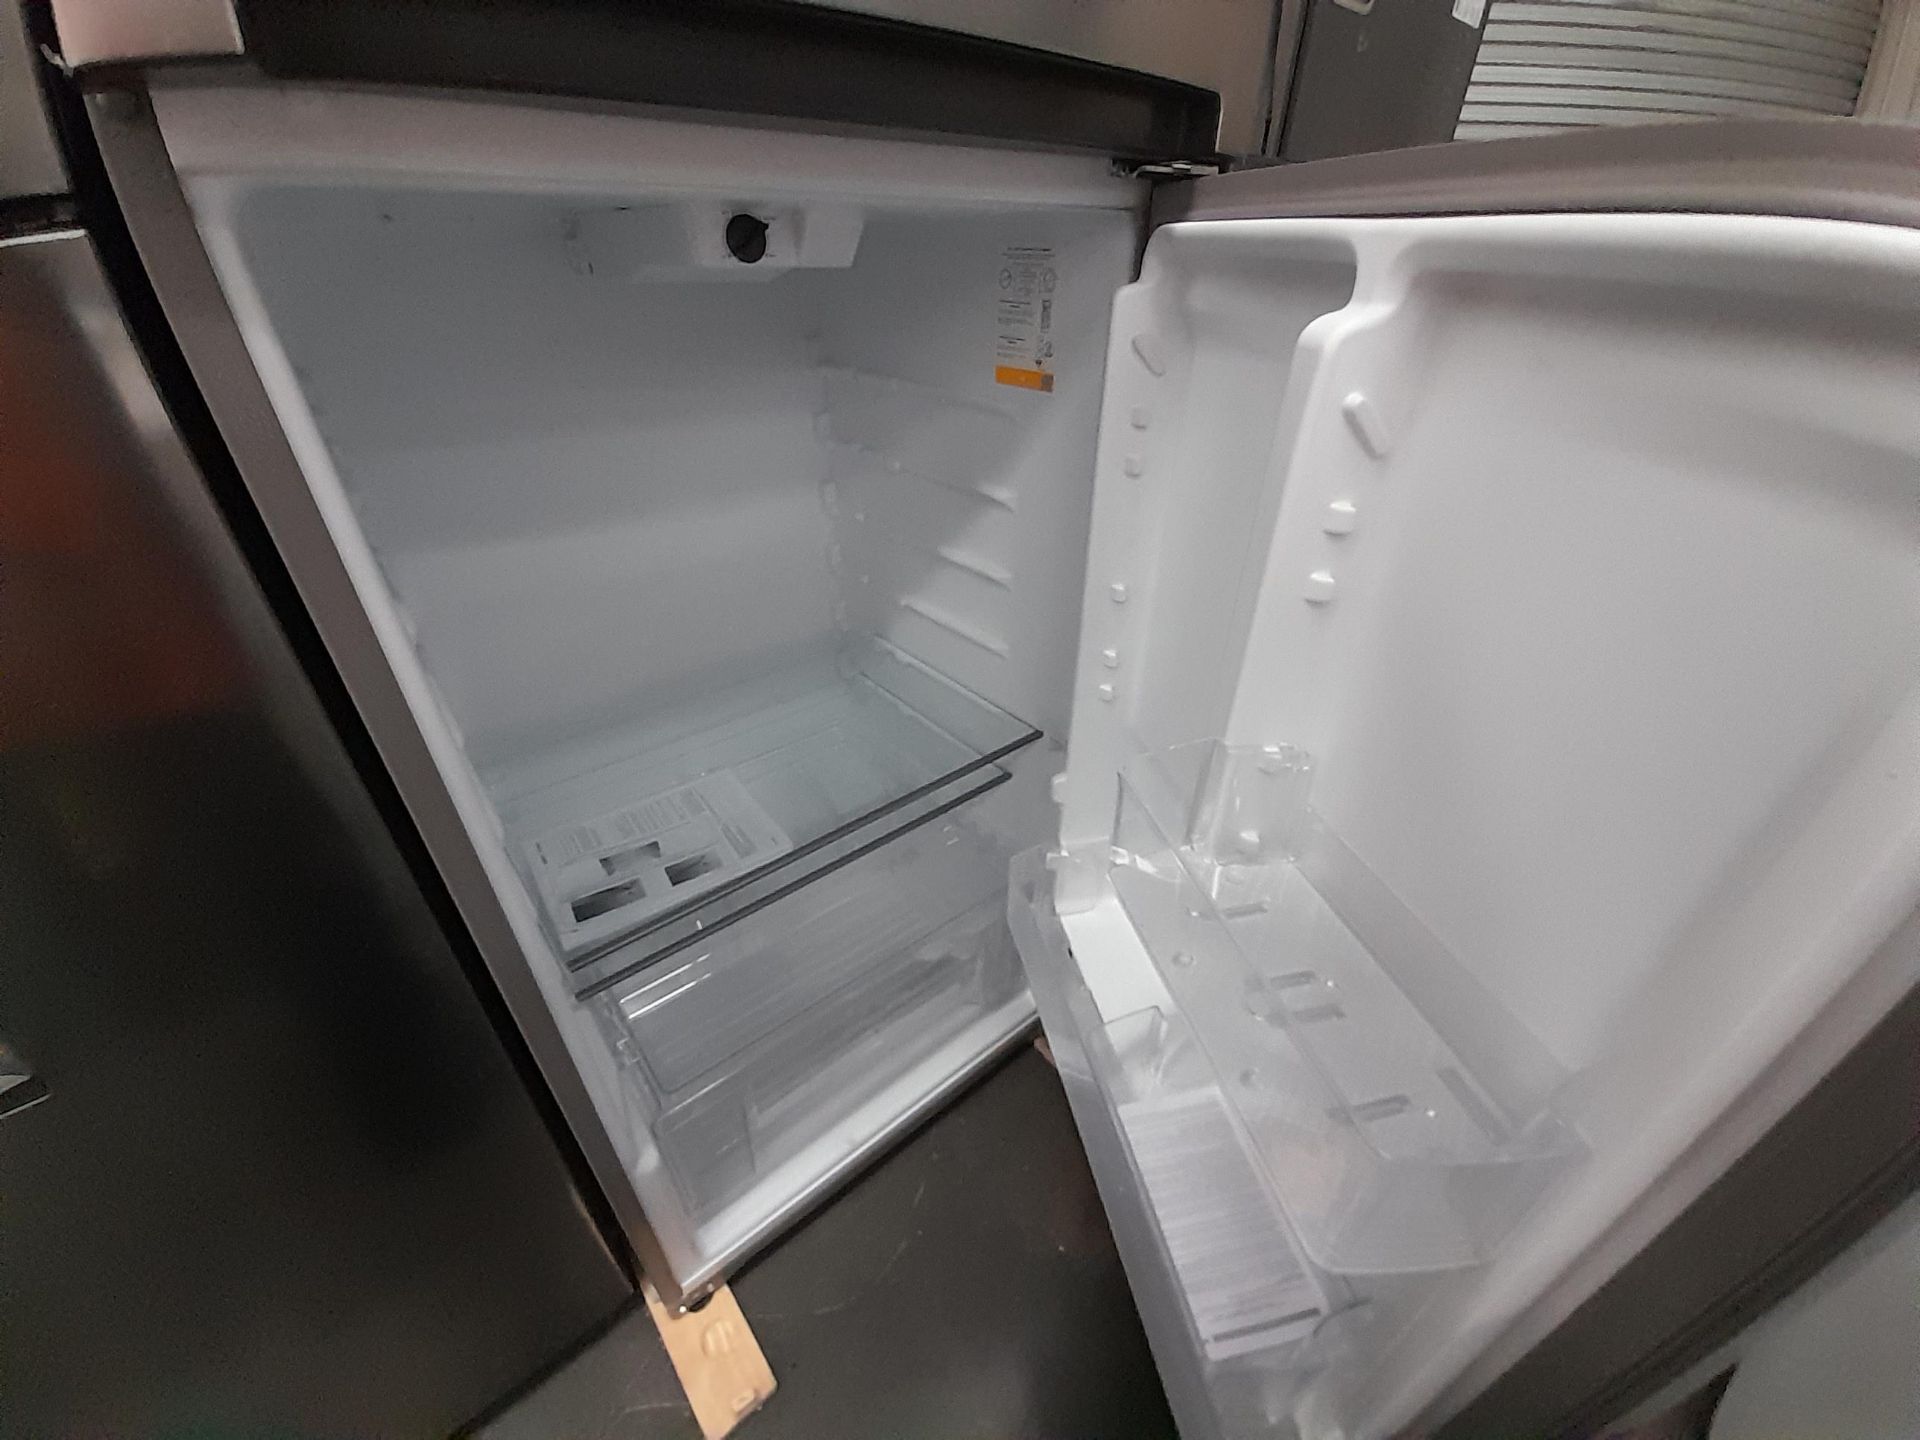 Lote de 2 refrigeradores Contiene: 1 Refrigerador Con Dispensador De Agua Marca LG, Modelo GT32WDC, - Image 6 of 8